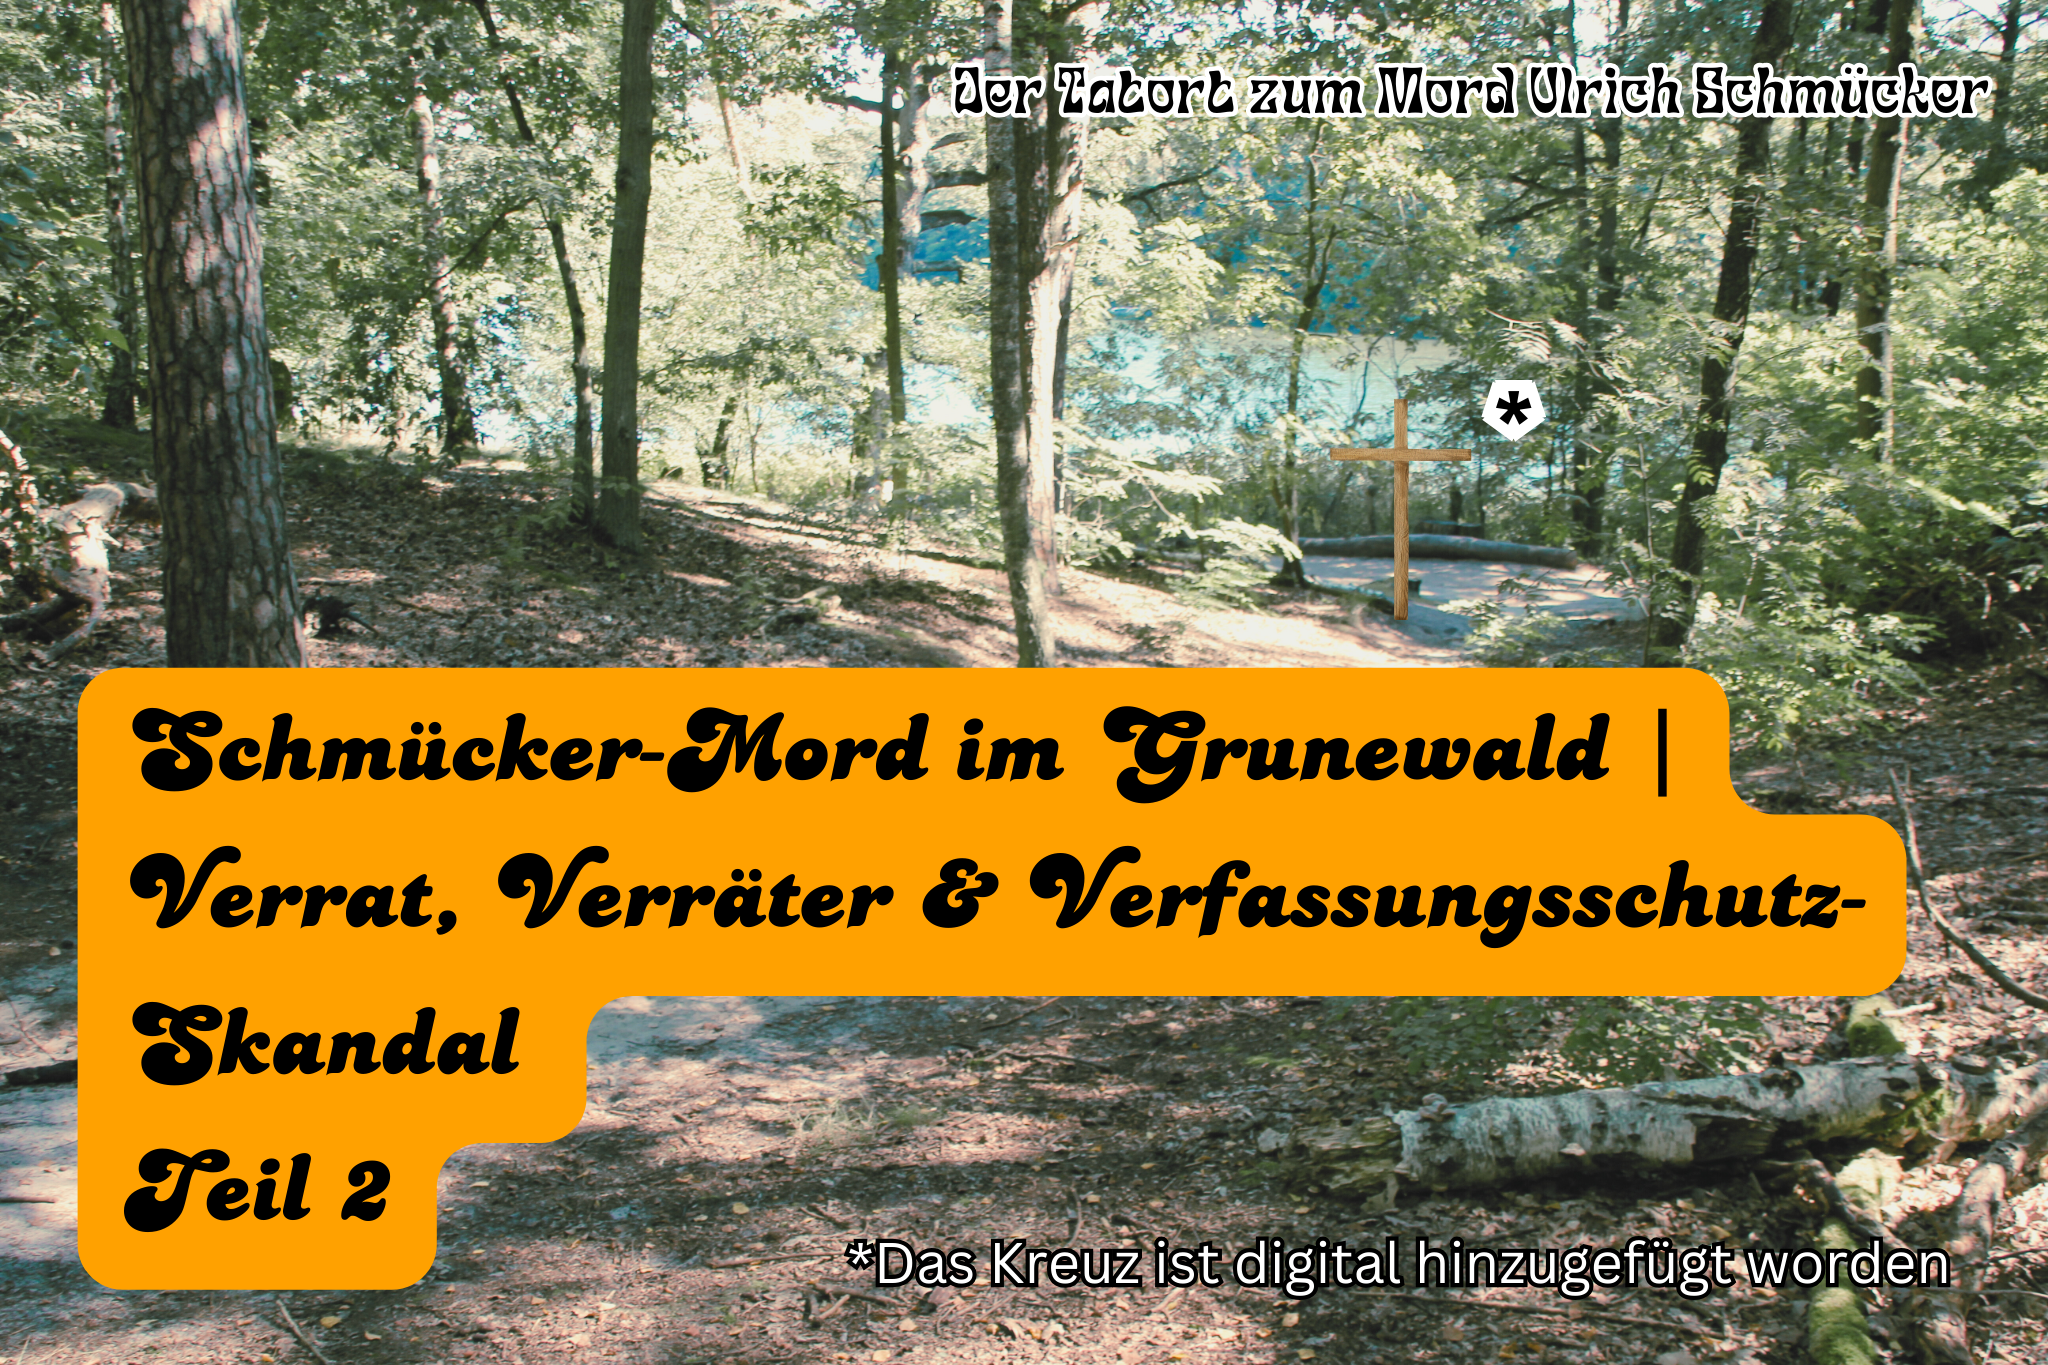 Schmücker-Mord im Grunewald | Verrat, Verräter & Verfassungsschutz-Skandal – Teil 2